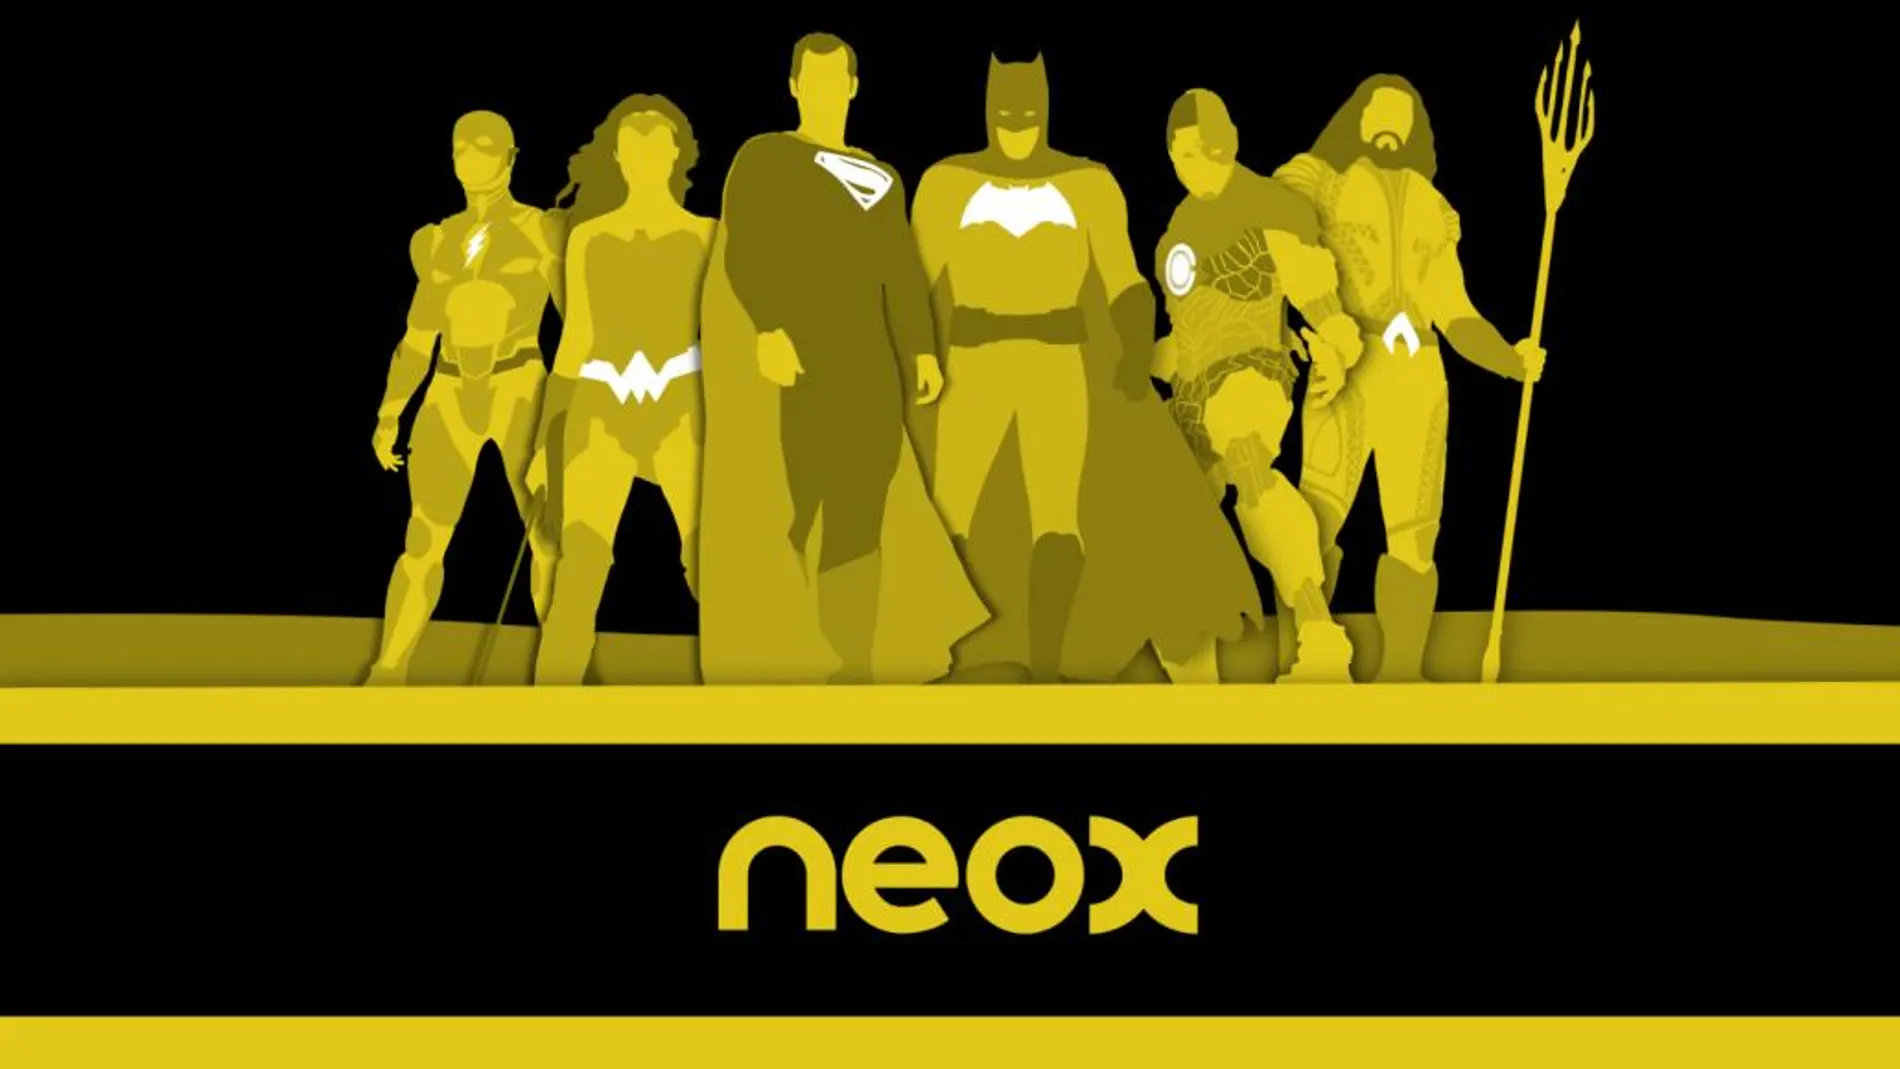 ‘Liga de la justicia’ en Neox con un programa especial de producción propia y ‘El caballero oscuro: La leyenda renace’